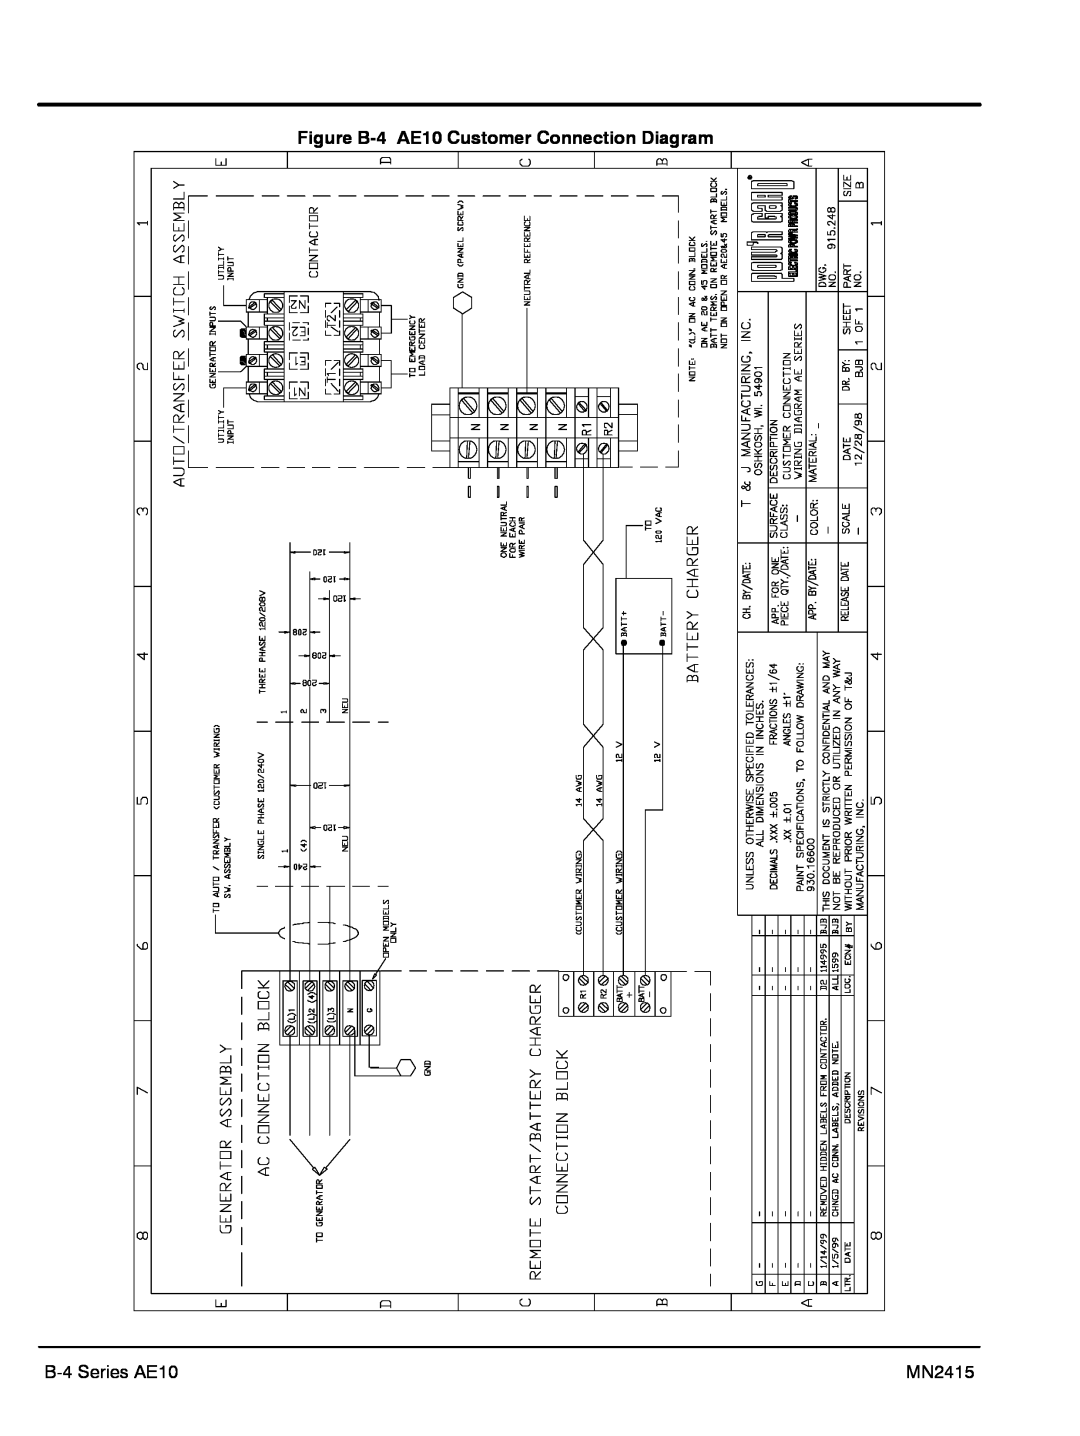 Baldor AE25, AE11, AE8 manual Figure B-4 AE10 Customer Connection Diagram, B-4 Series AE10, MN2415 